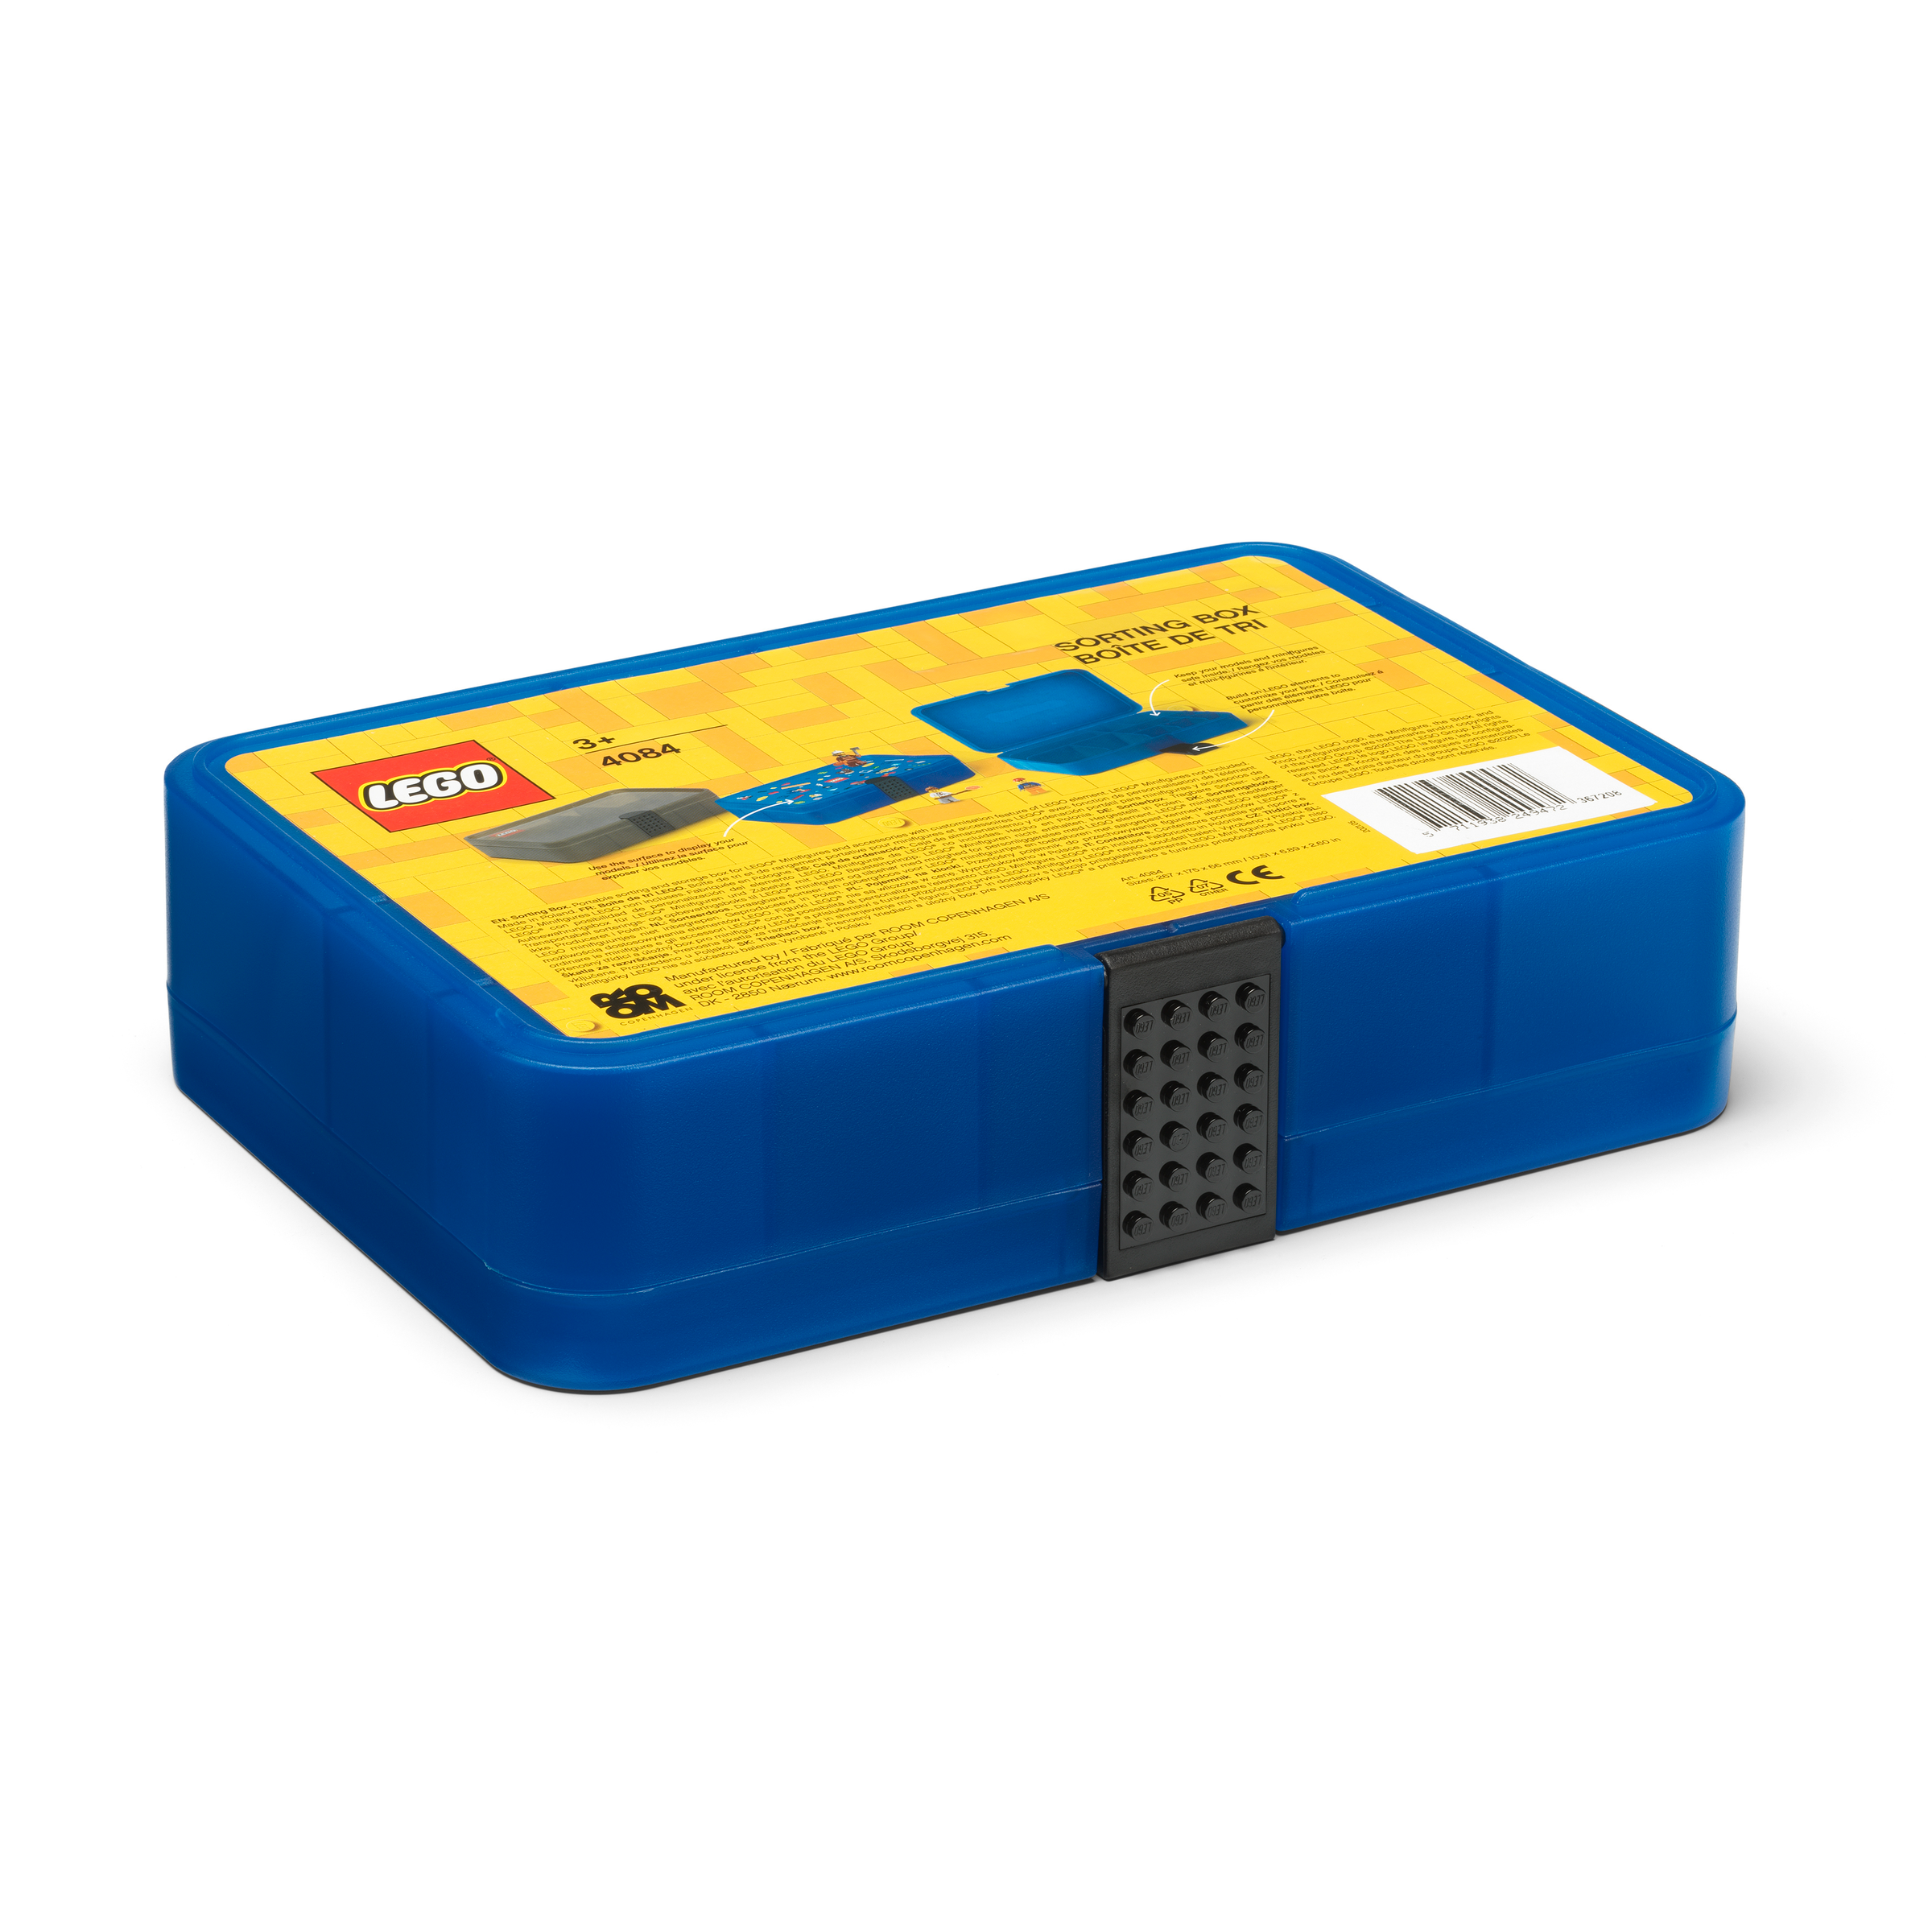 Tegenstander roestvrij ambitie Sorteerdoos – blauw 5007279 | Overig | Officiële LEGO® winkel BE